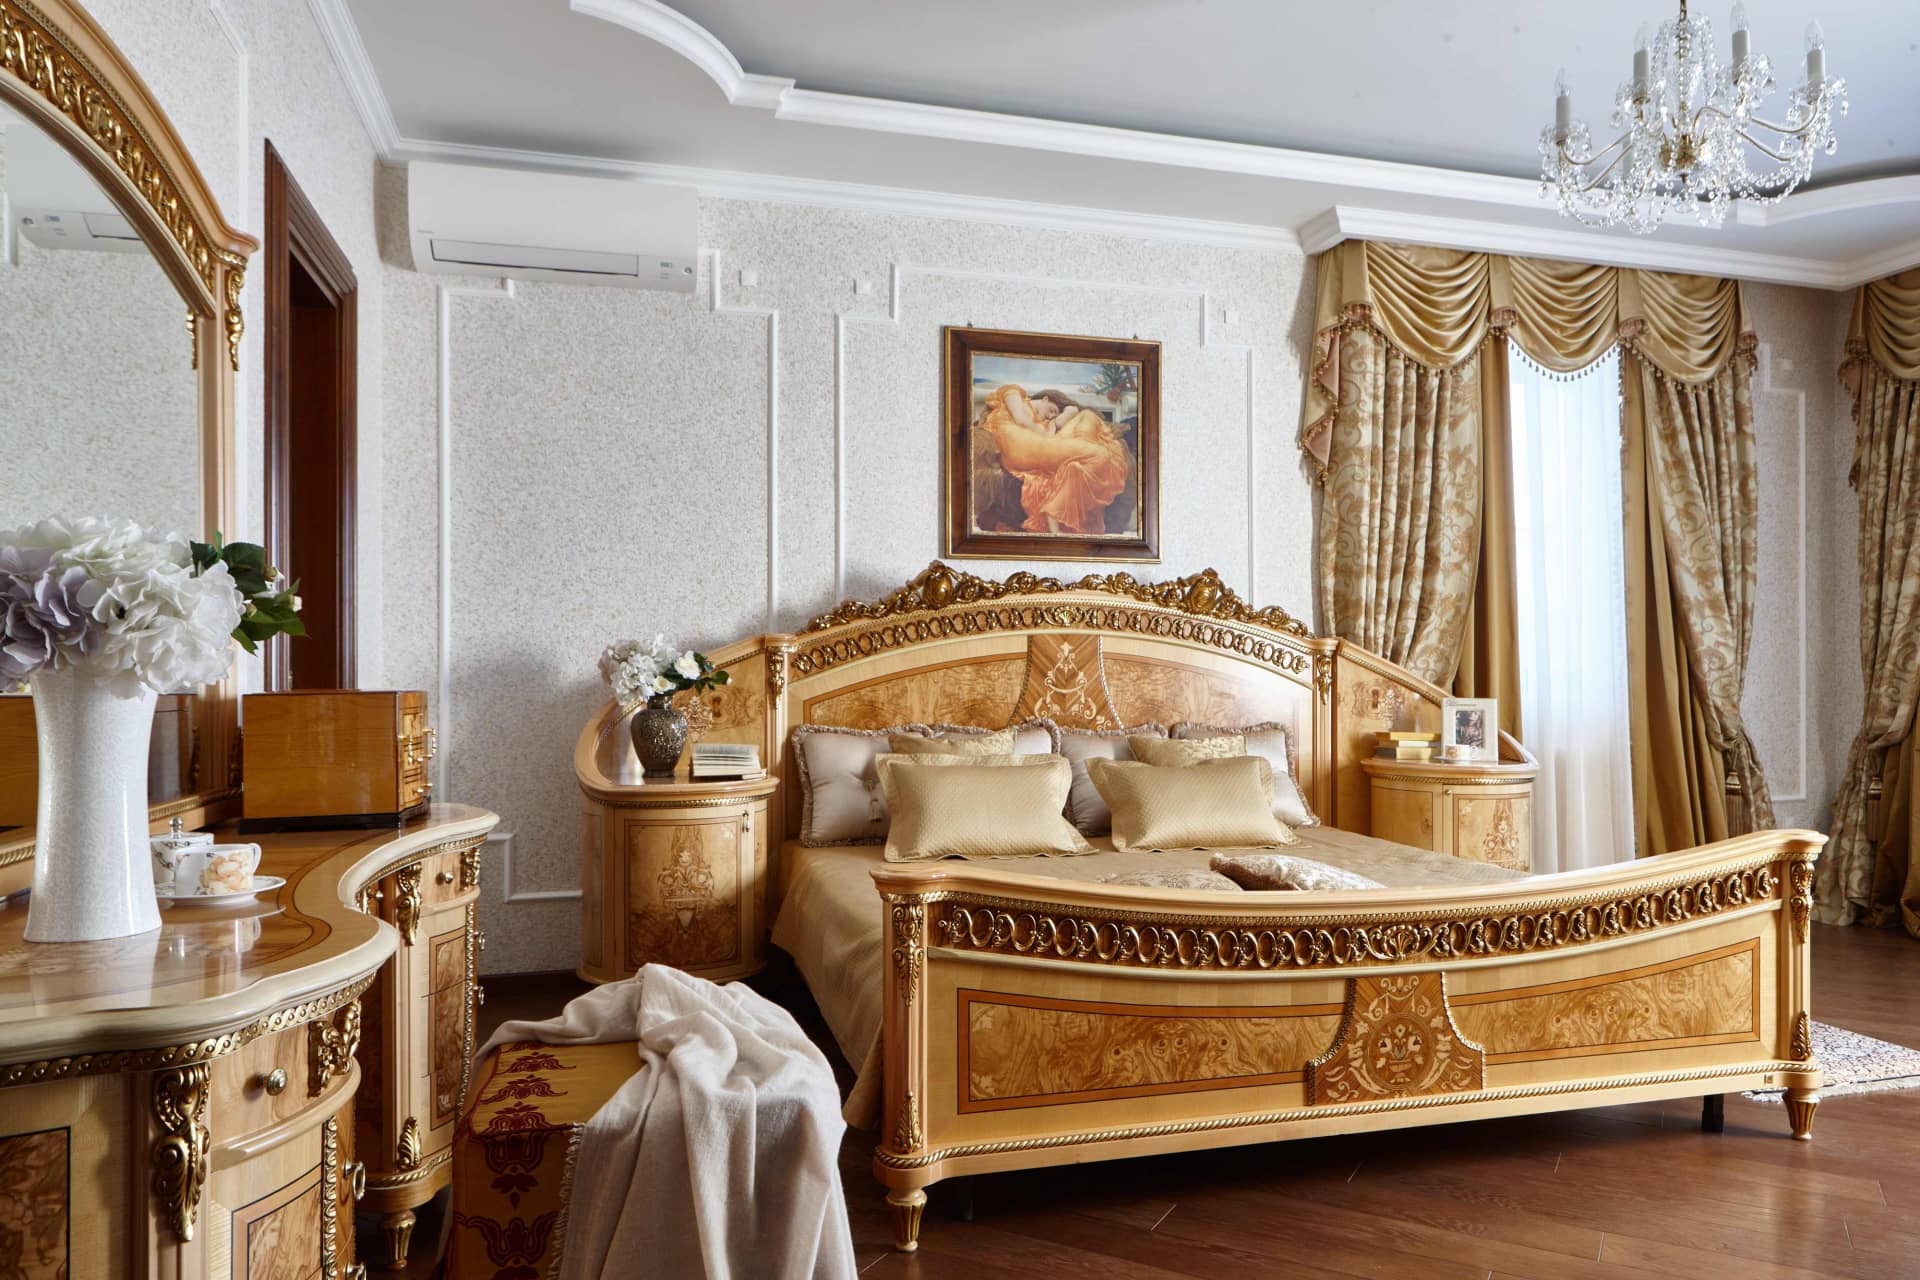 Большая кровать выполнена в классическом стиле